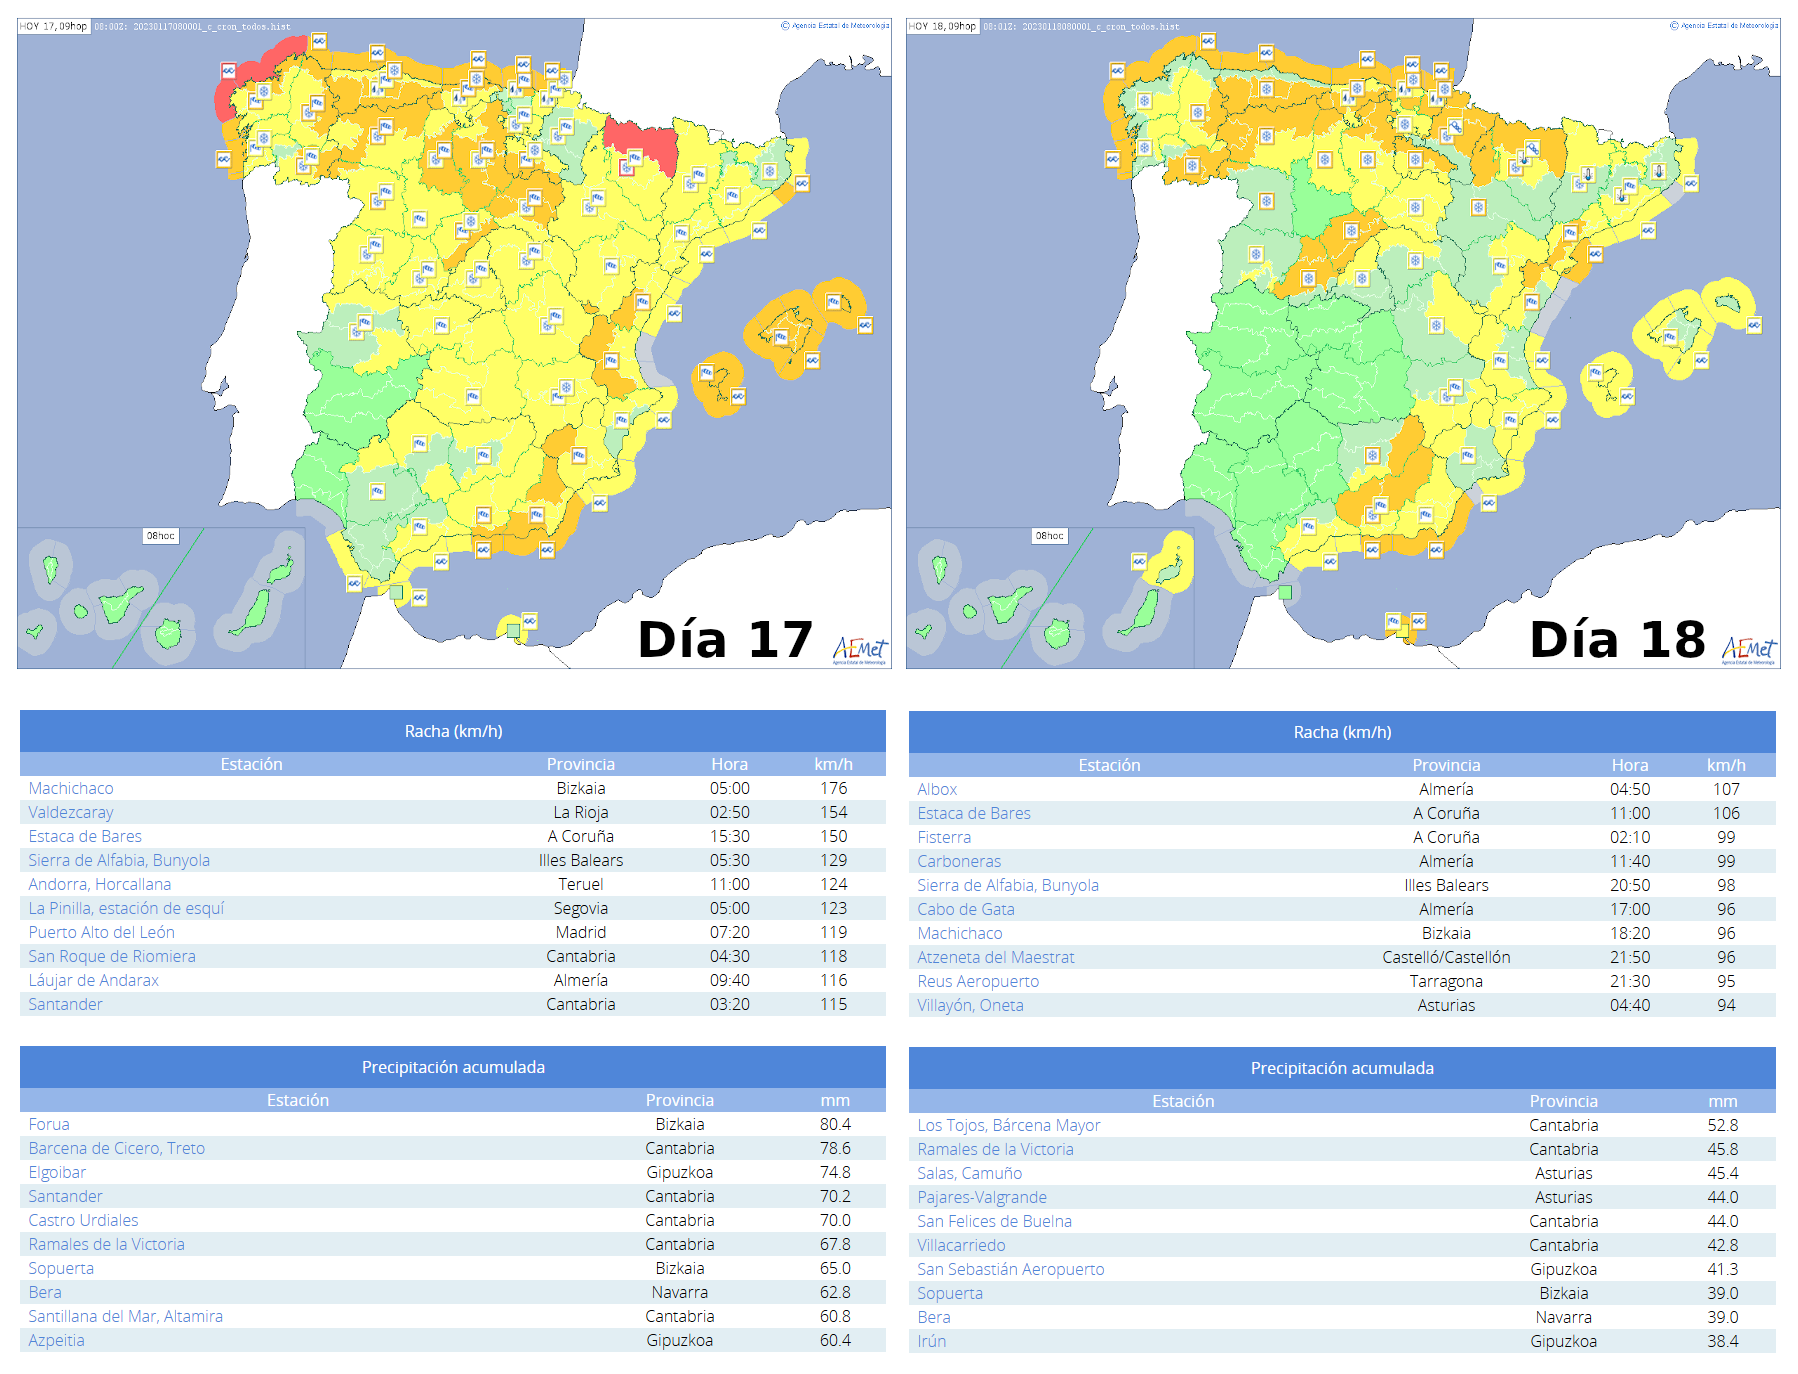 Avisos emitidos para el territorio peninsular y Baleares, así como los principales registros de rachas maximas y precipitaciones acumuladas en 24 horas en estaciones de AEMET a lo largo de los días 17 y 18 de enero.